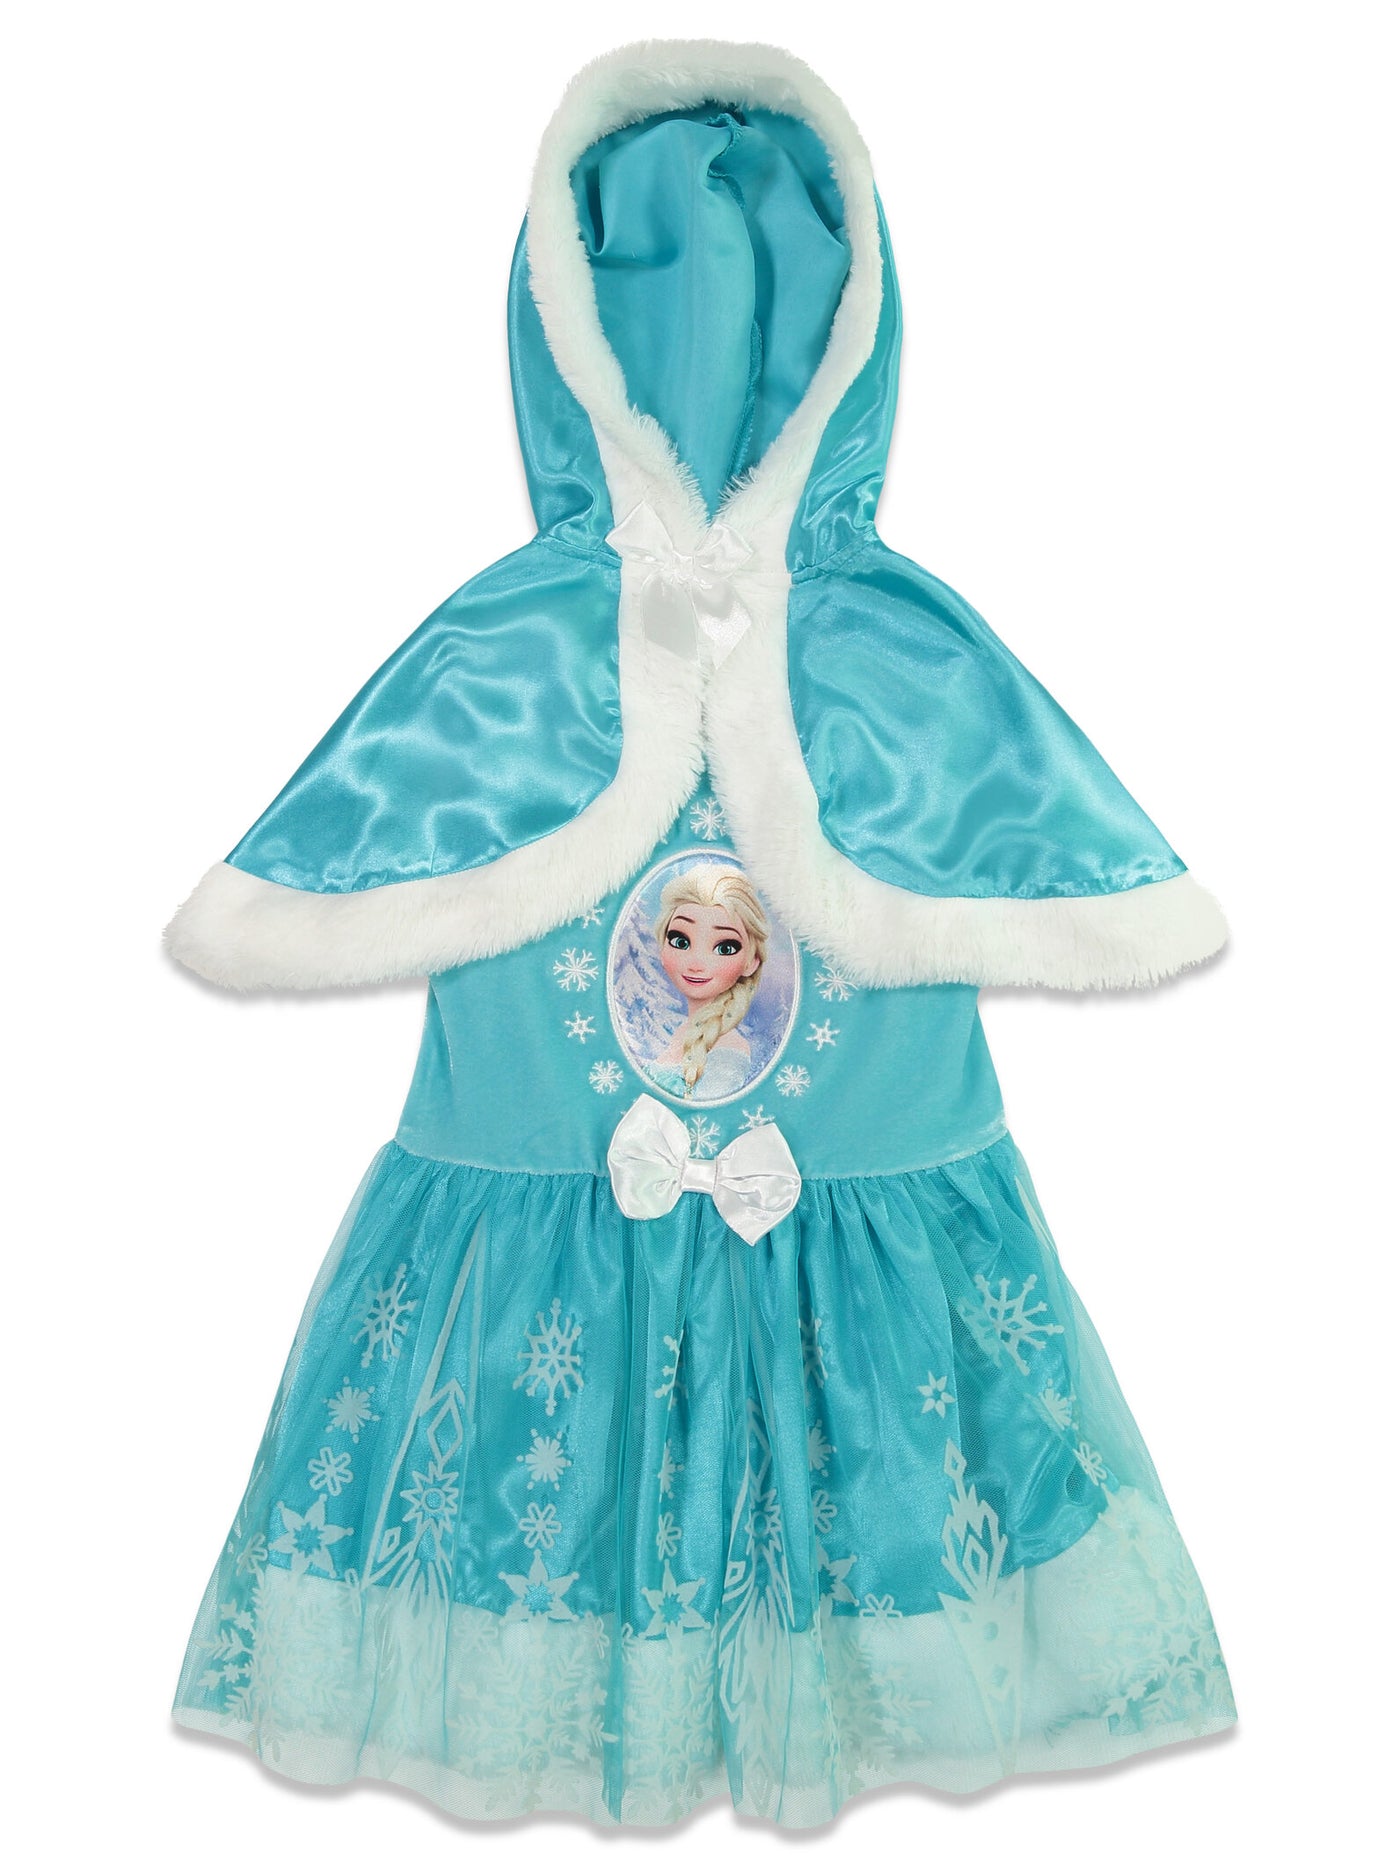 Queen Elsa Caped Costume Short Sleeve Dress